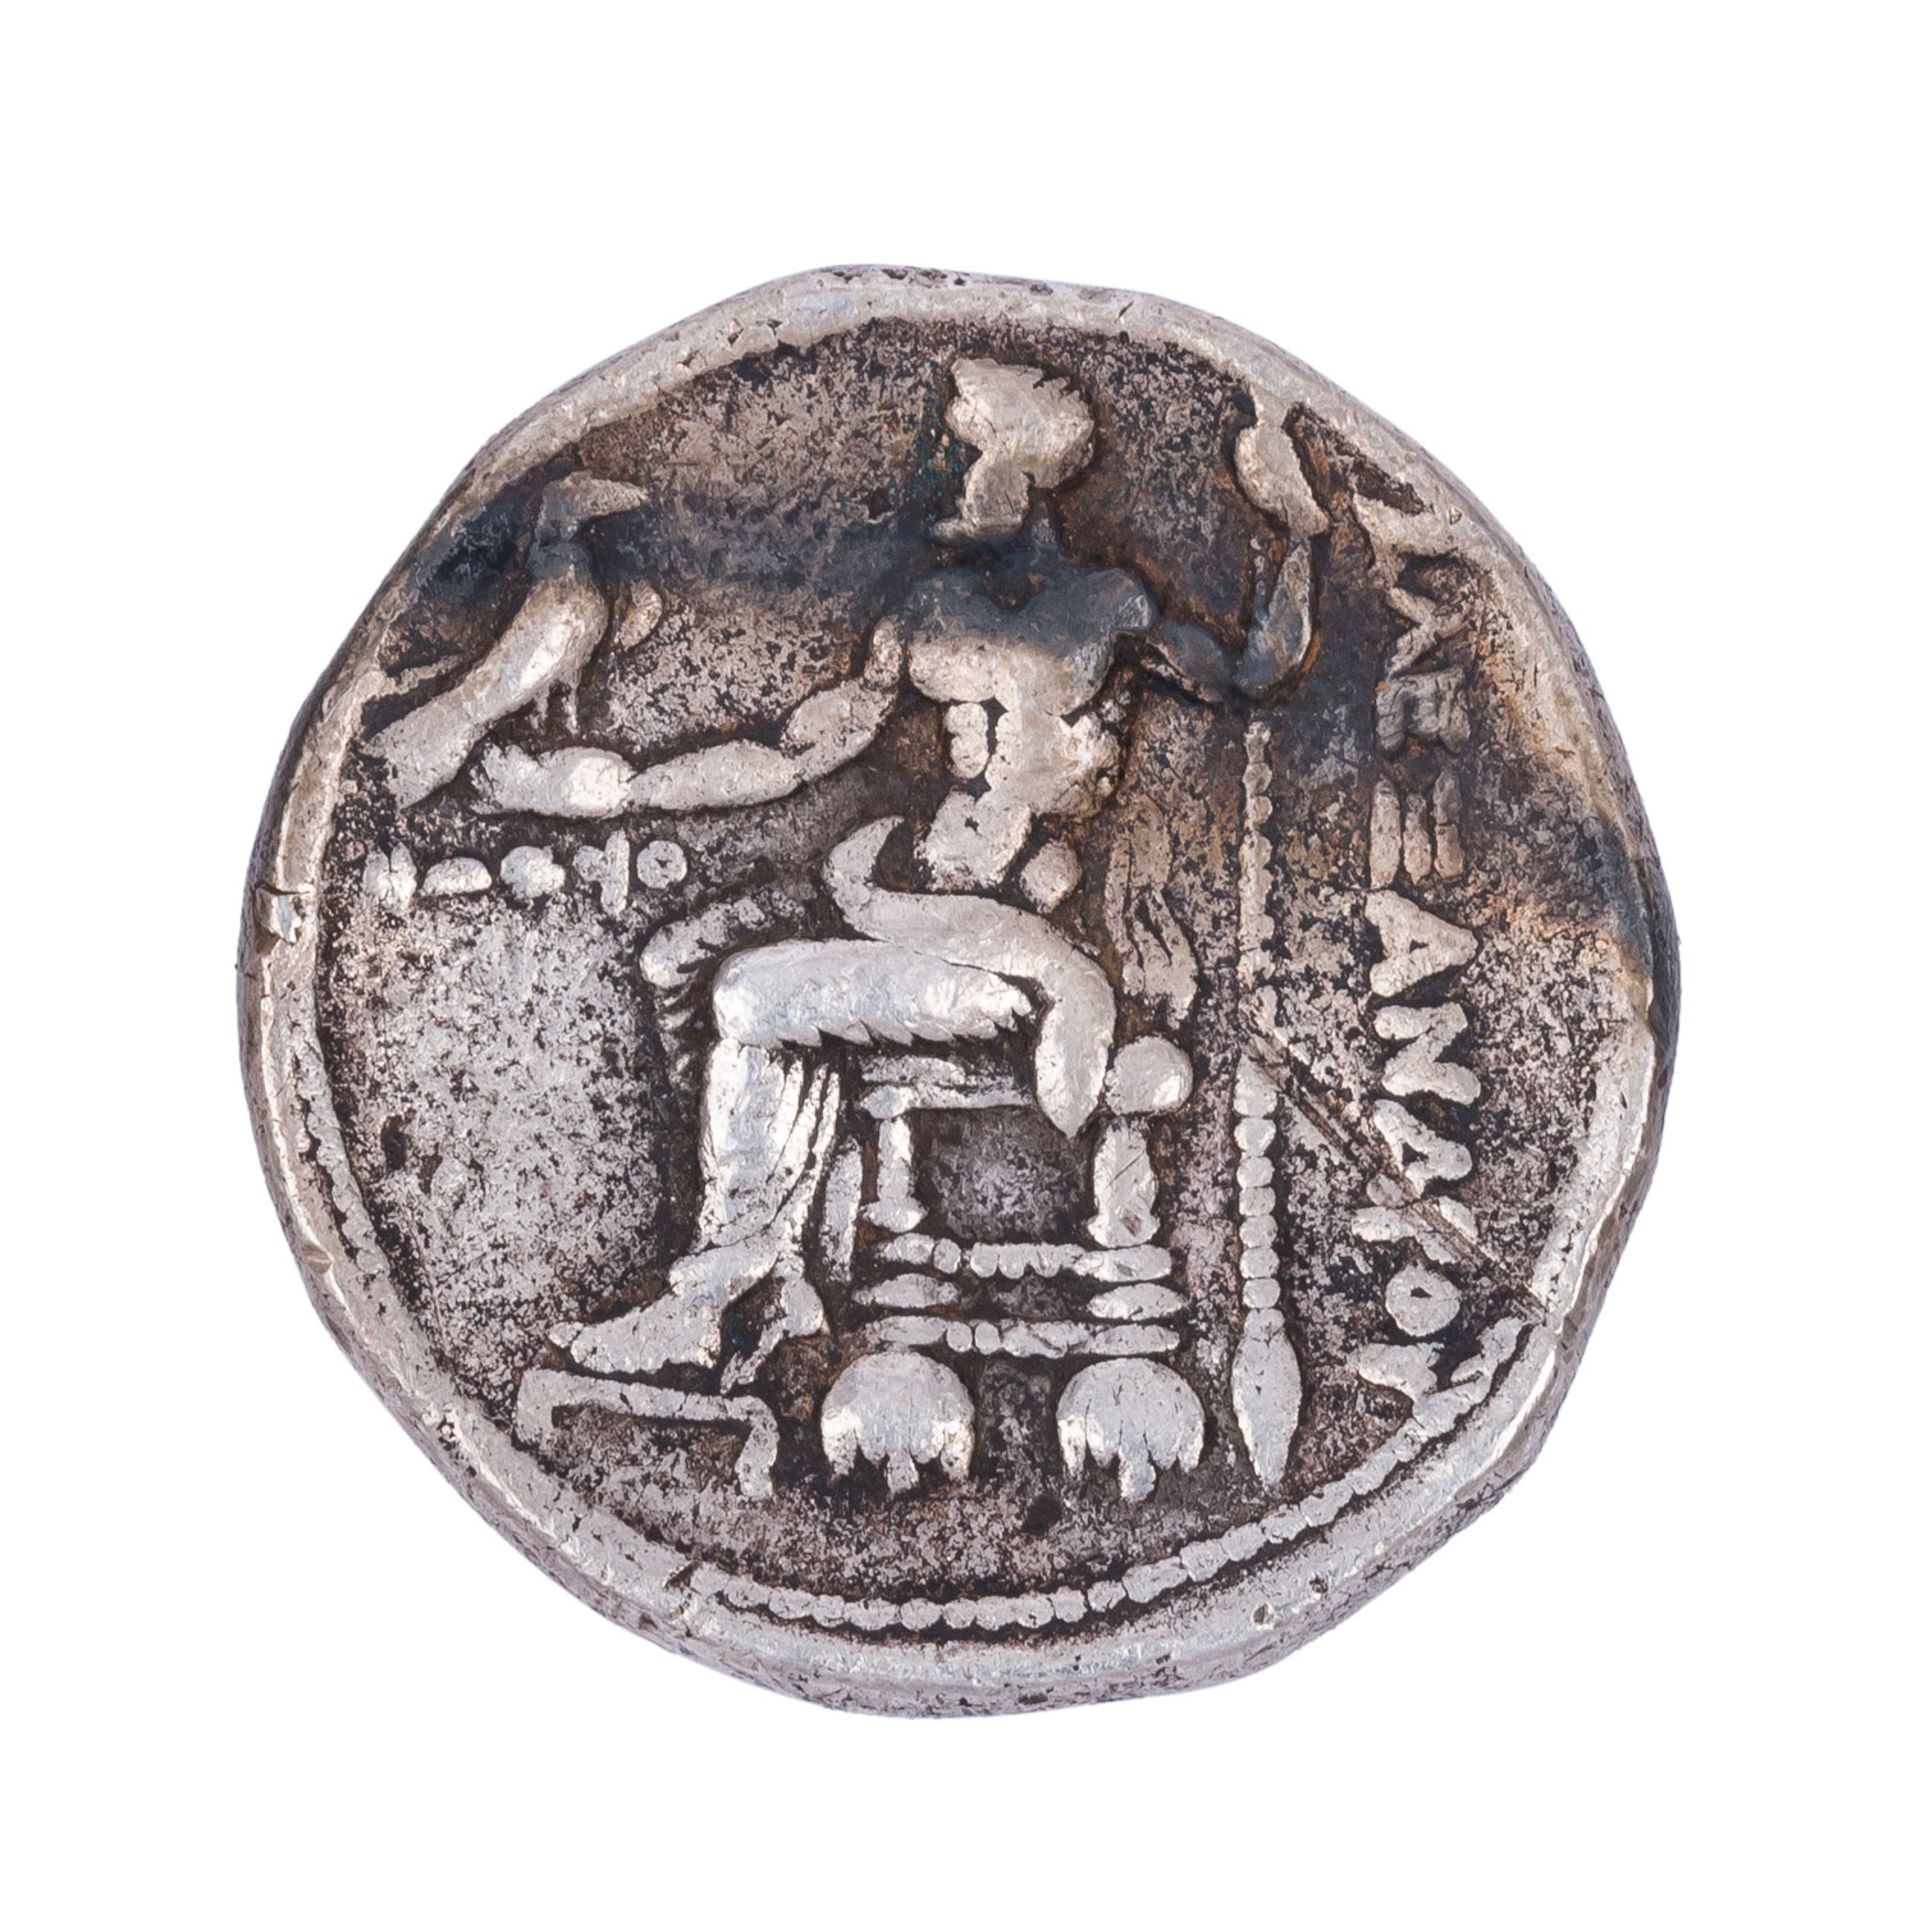 Makedonien/Silber - Tetradrachme 4.Jh.v.Chr., Alexander der Große, - Image 2 of 3